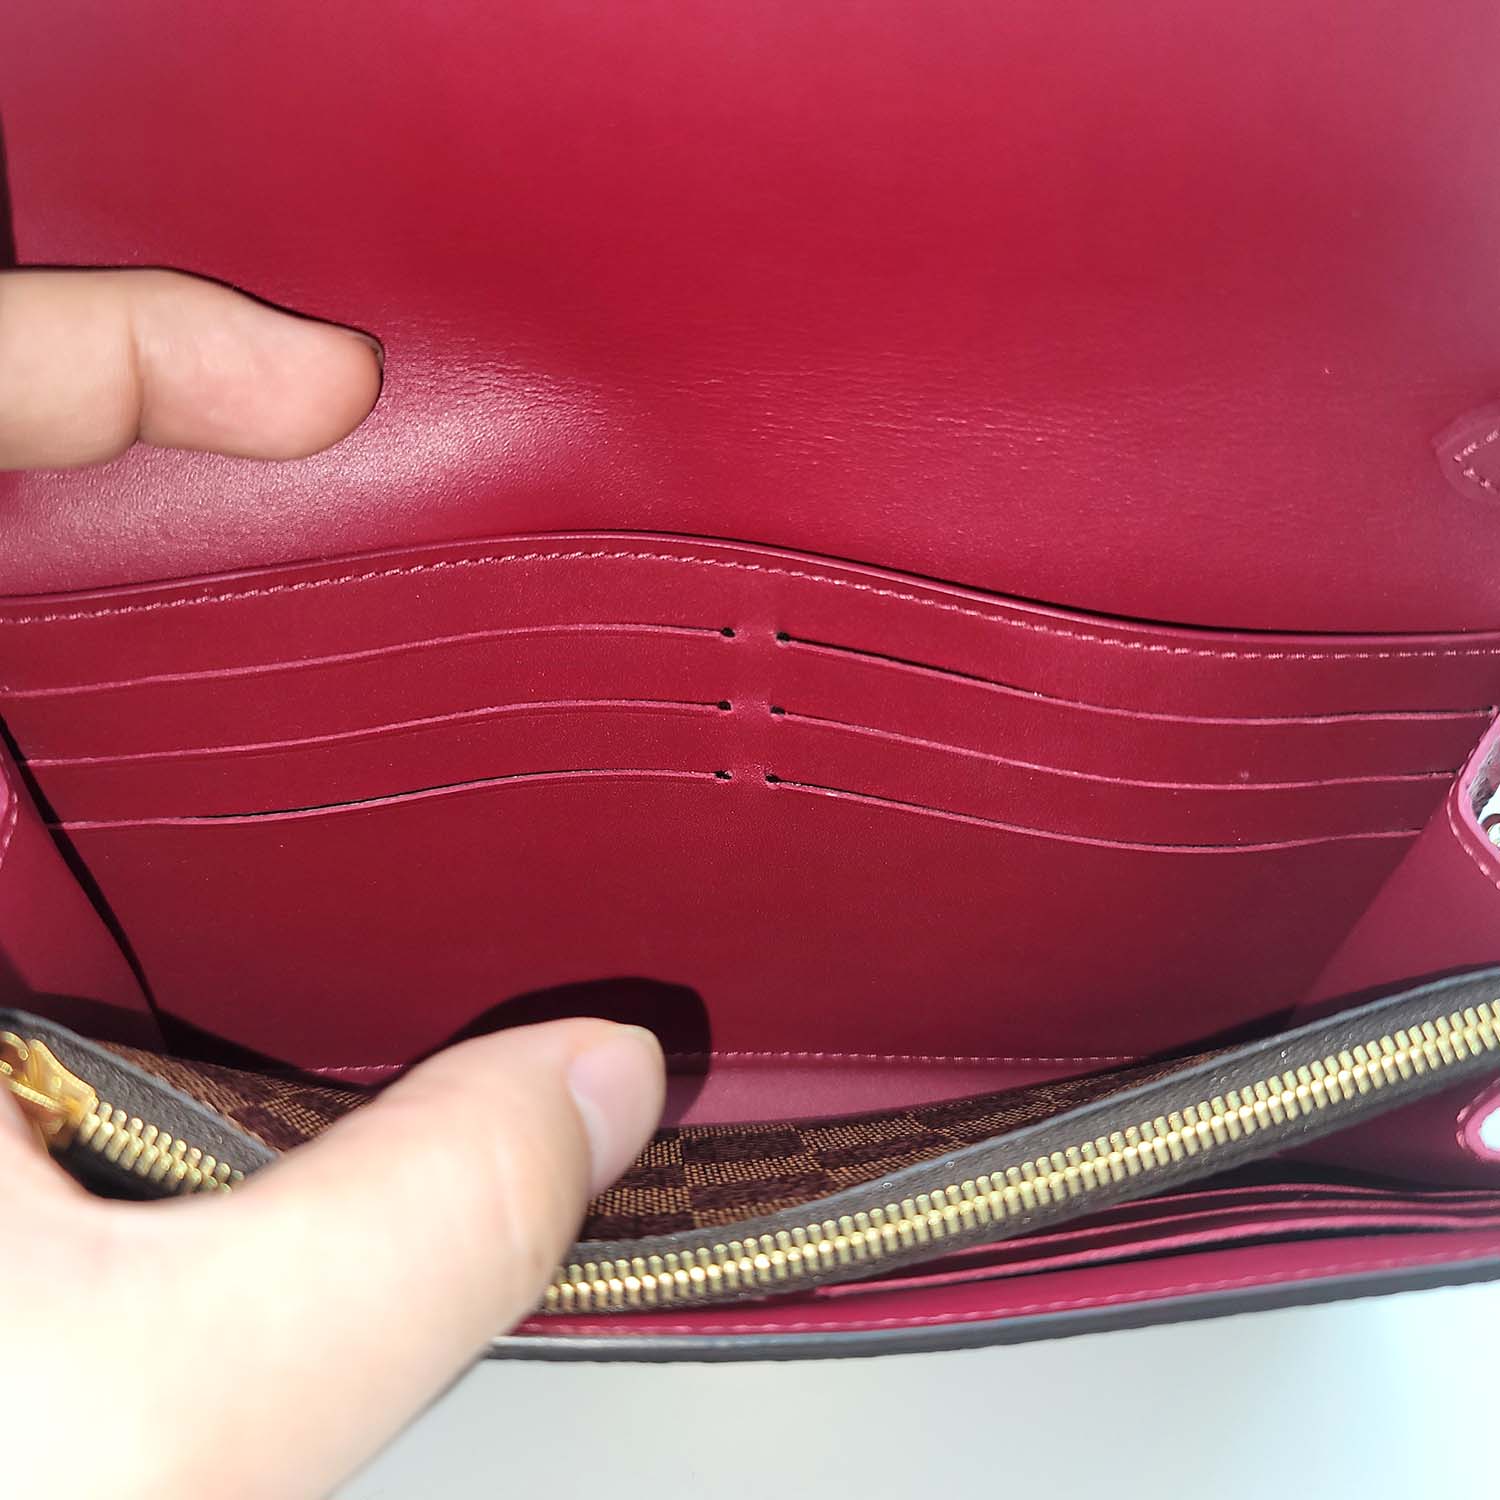 croisette compact wallet damier ebene